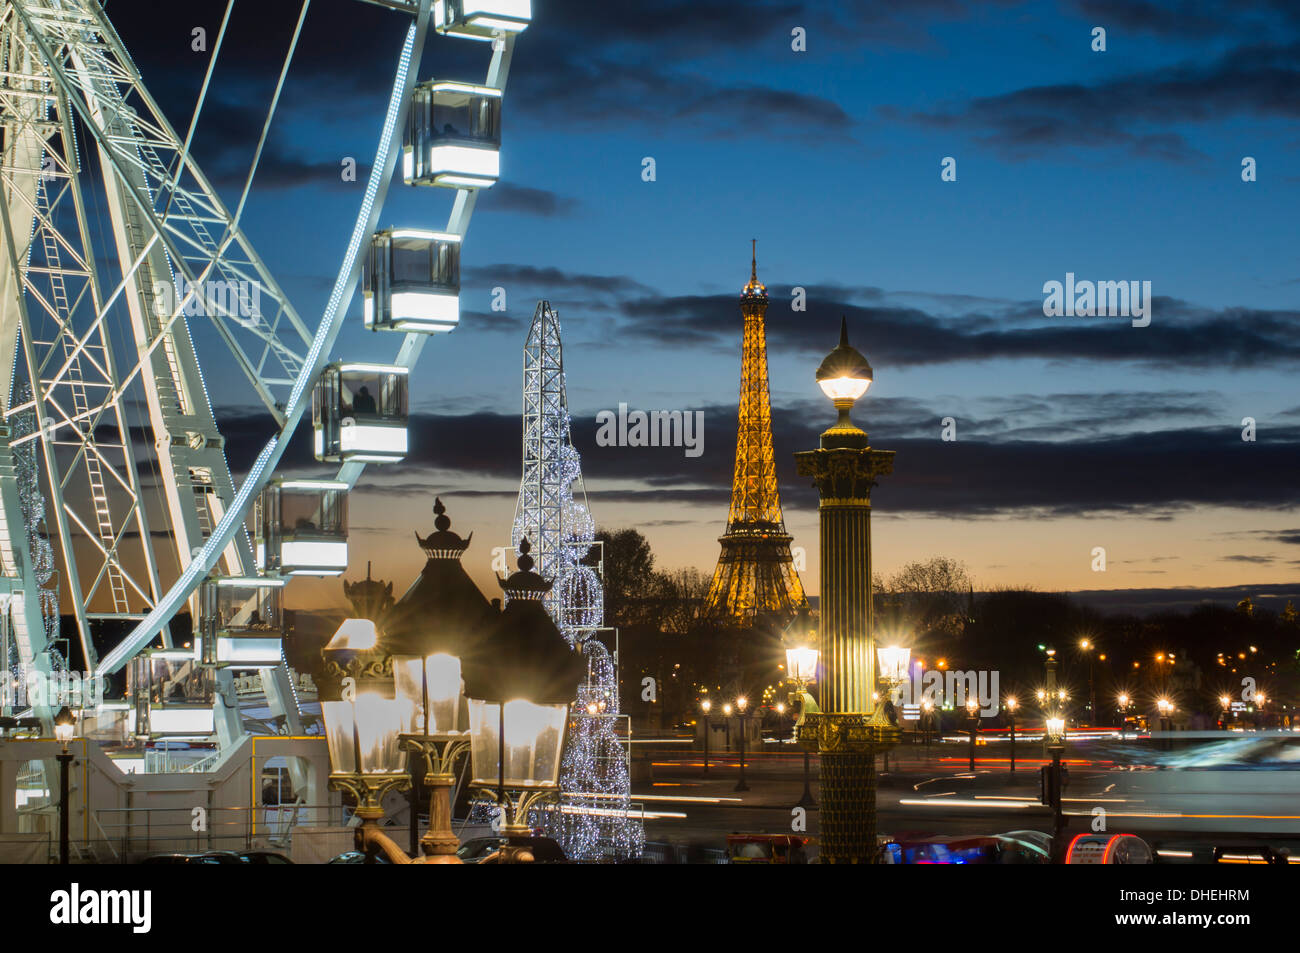 Poue de Paris, Place de la Concorde et de la Tour Eiffel, Paris, France, Europe Banque D'Images